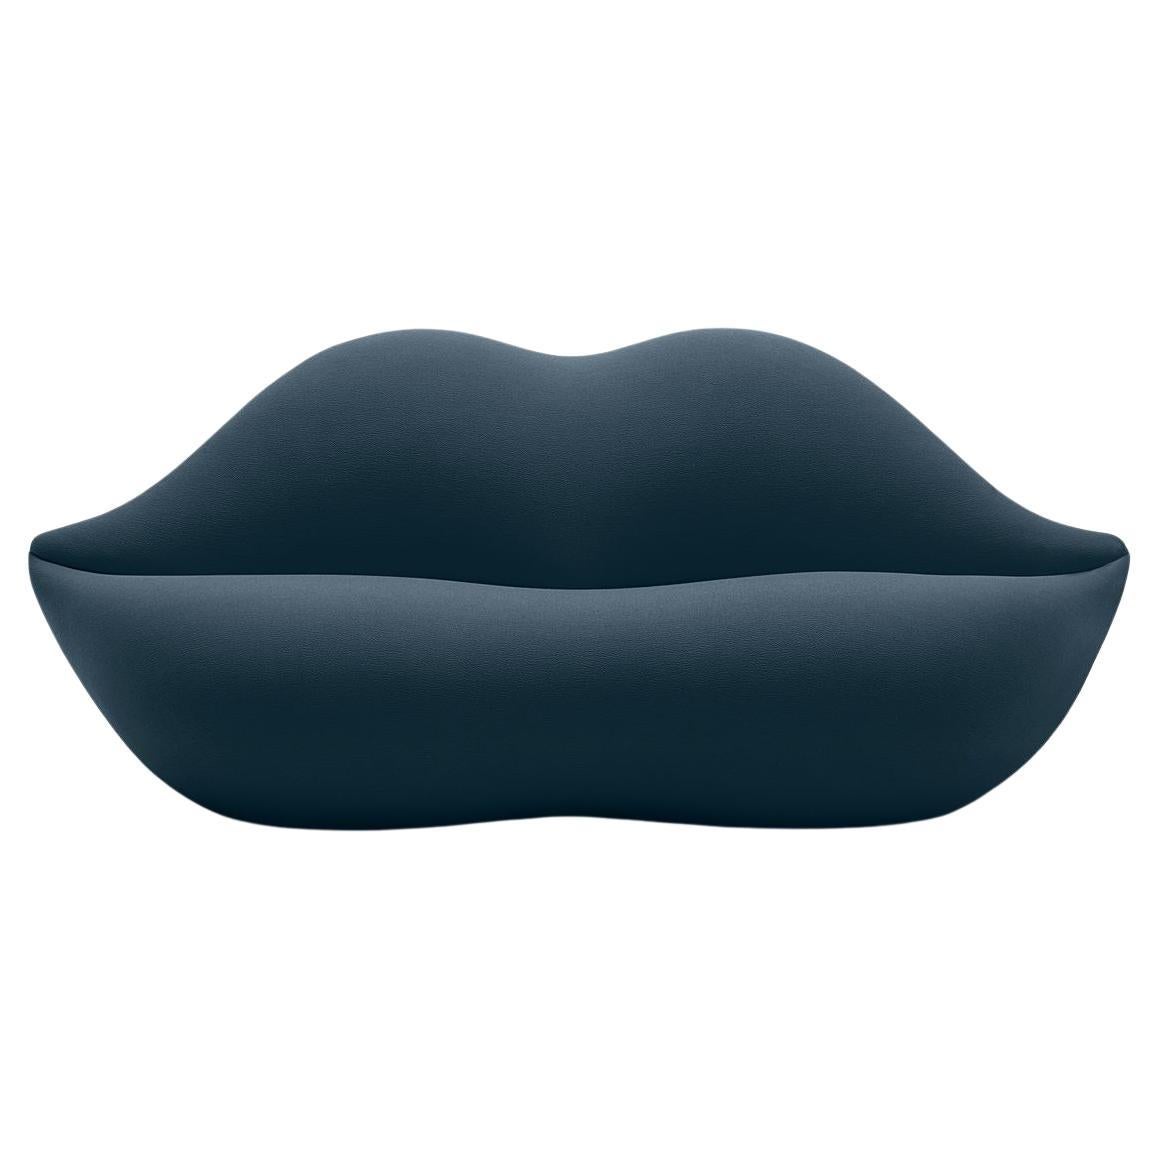 Gufram, canapé Bocca en forme de lèvre, saphir, par Studio 65